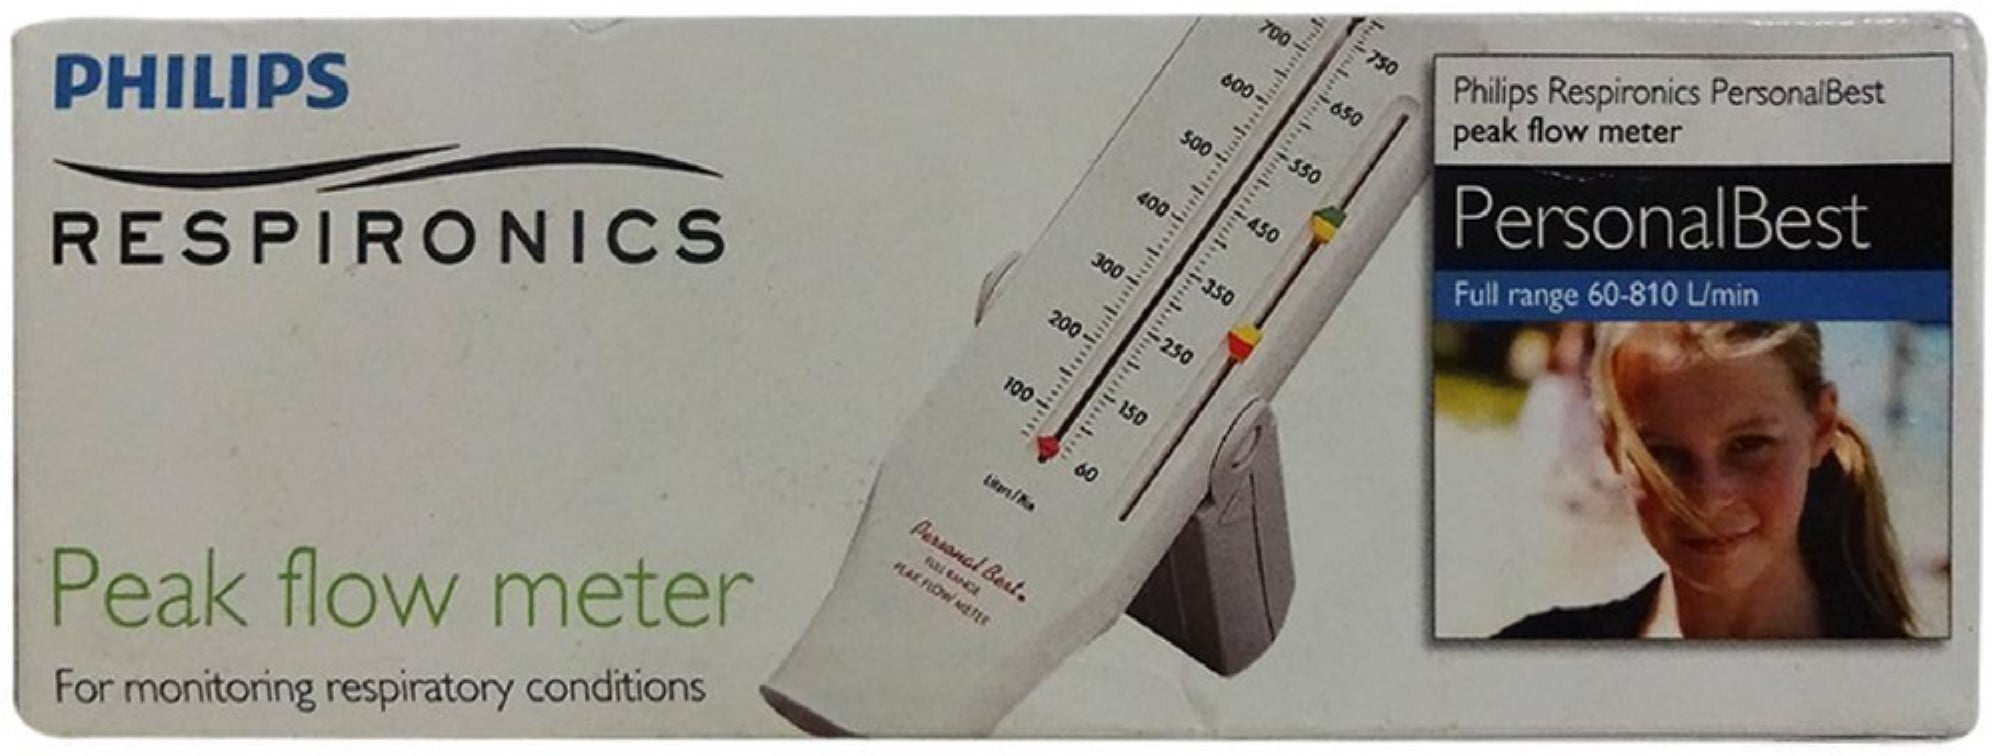 Philips Respironics Peak Flow Meter Chart